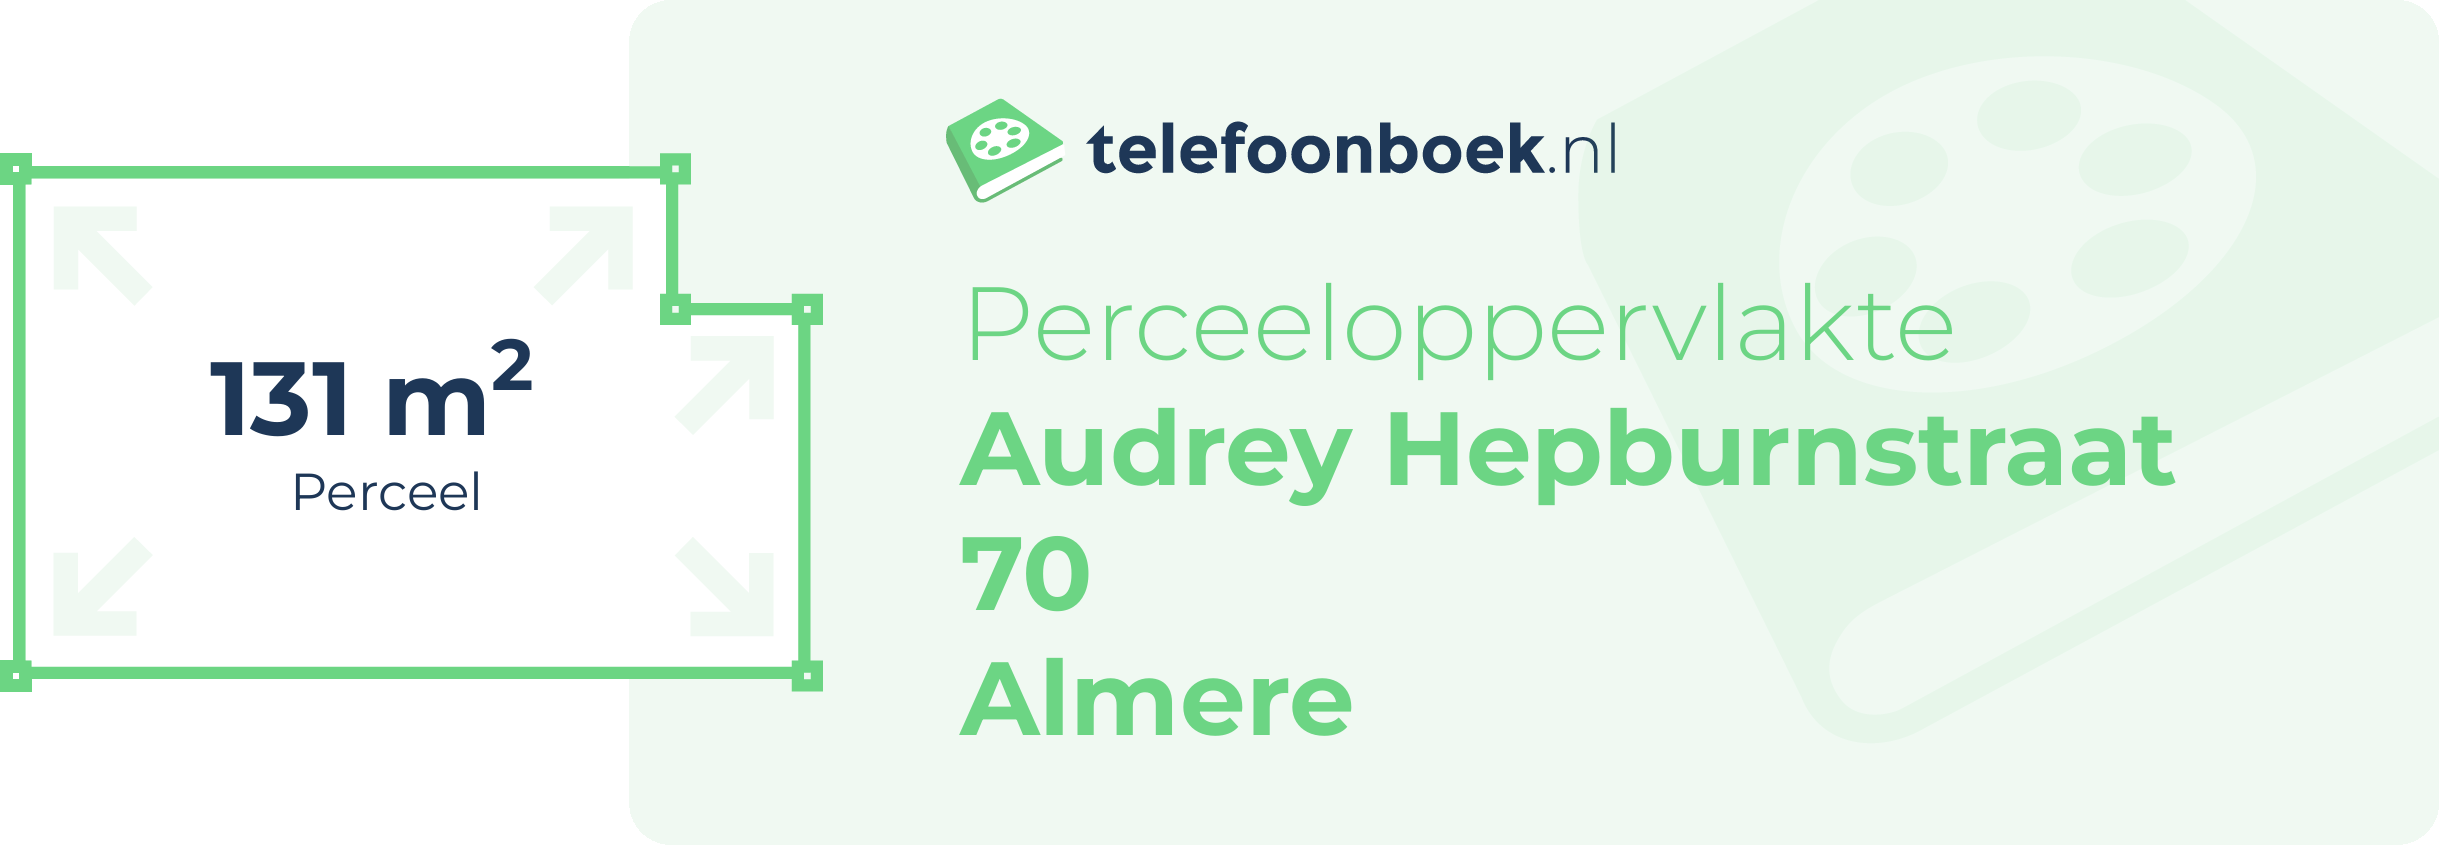 Perceeloppervlakte Audrey Hepburnstraat 70 Almere